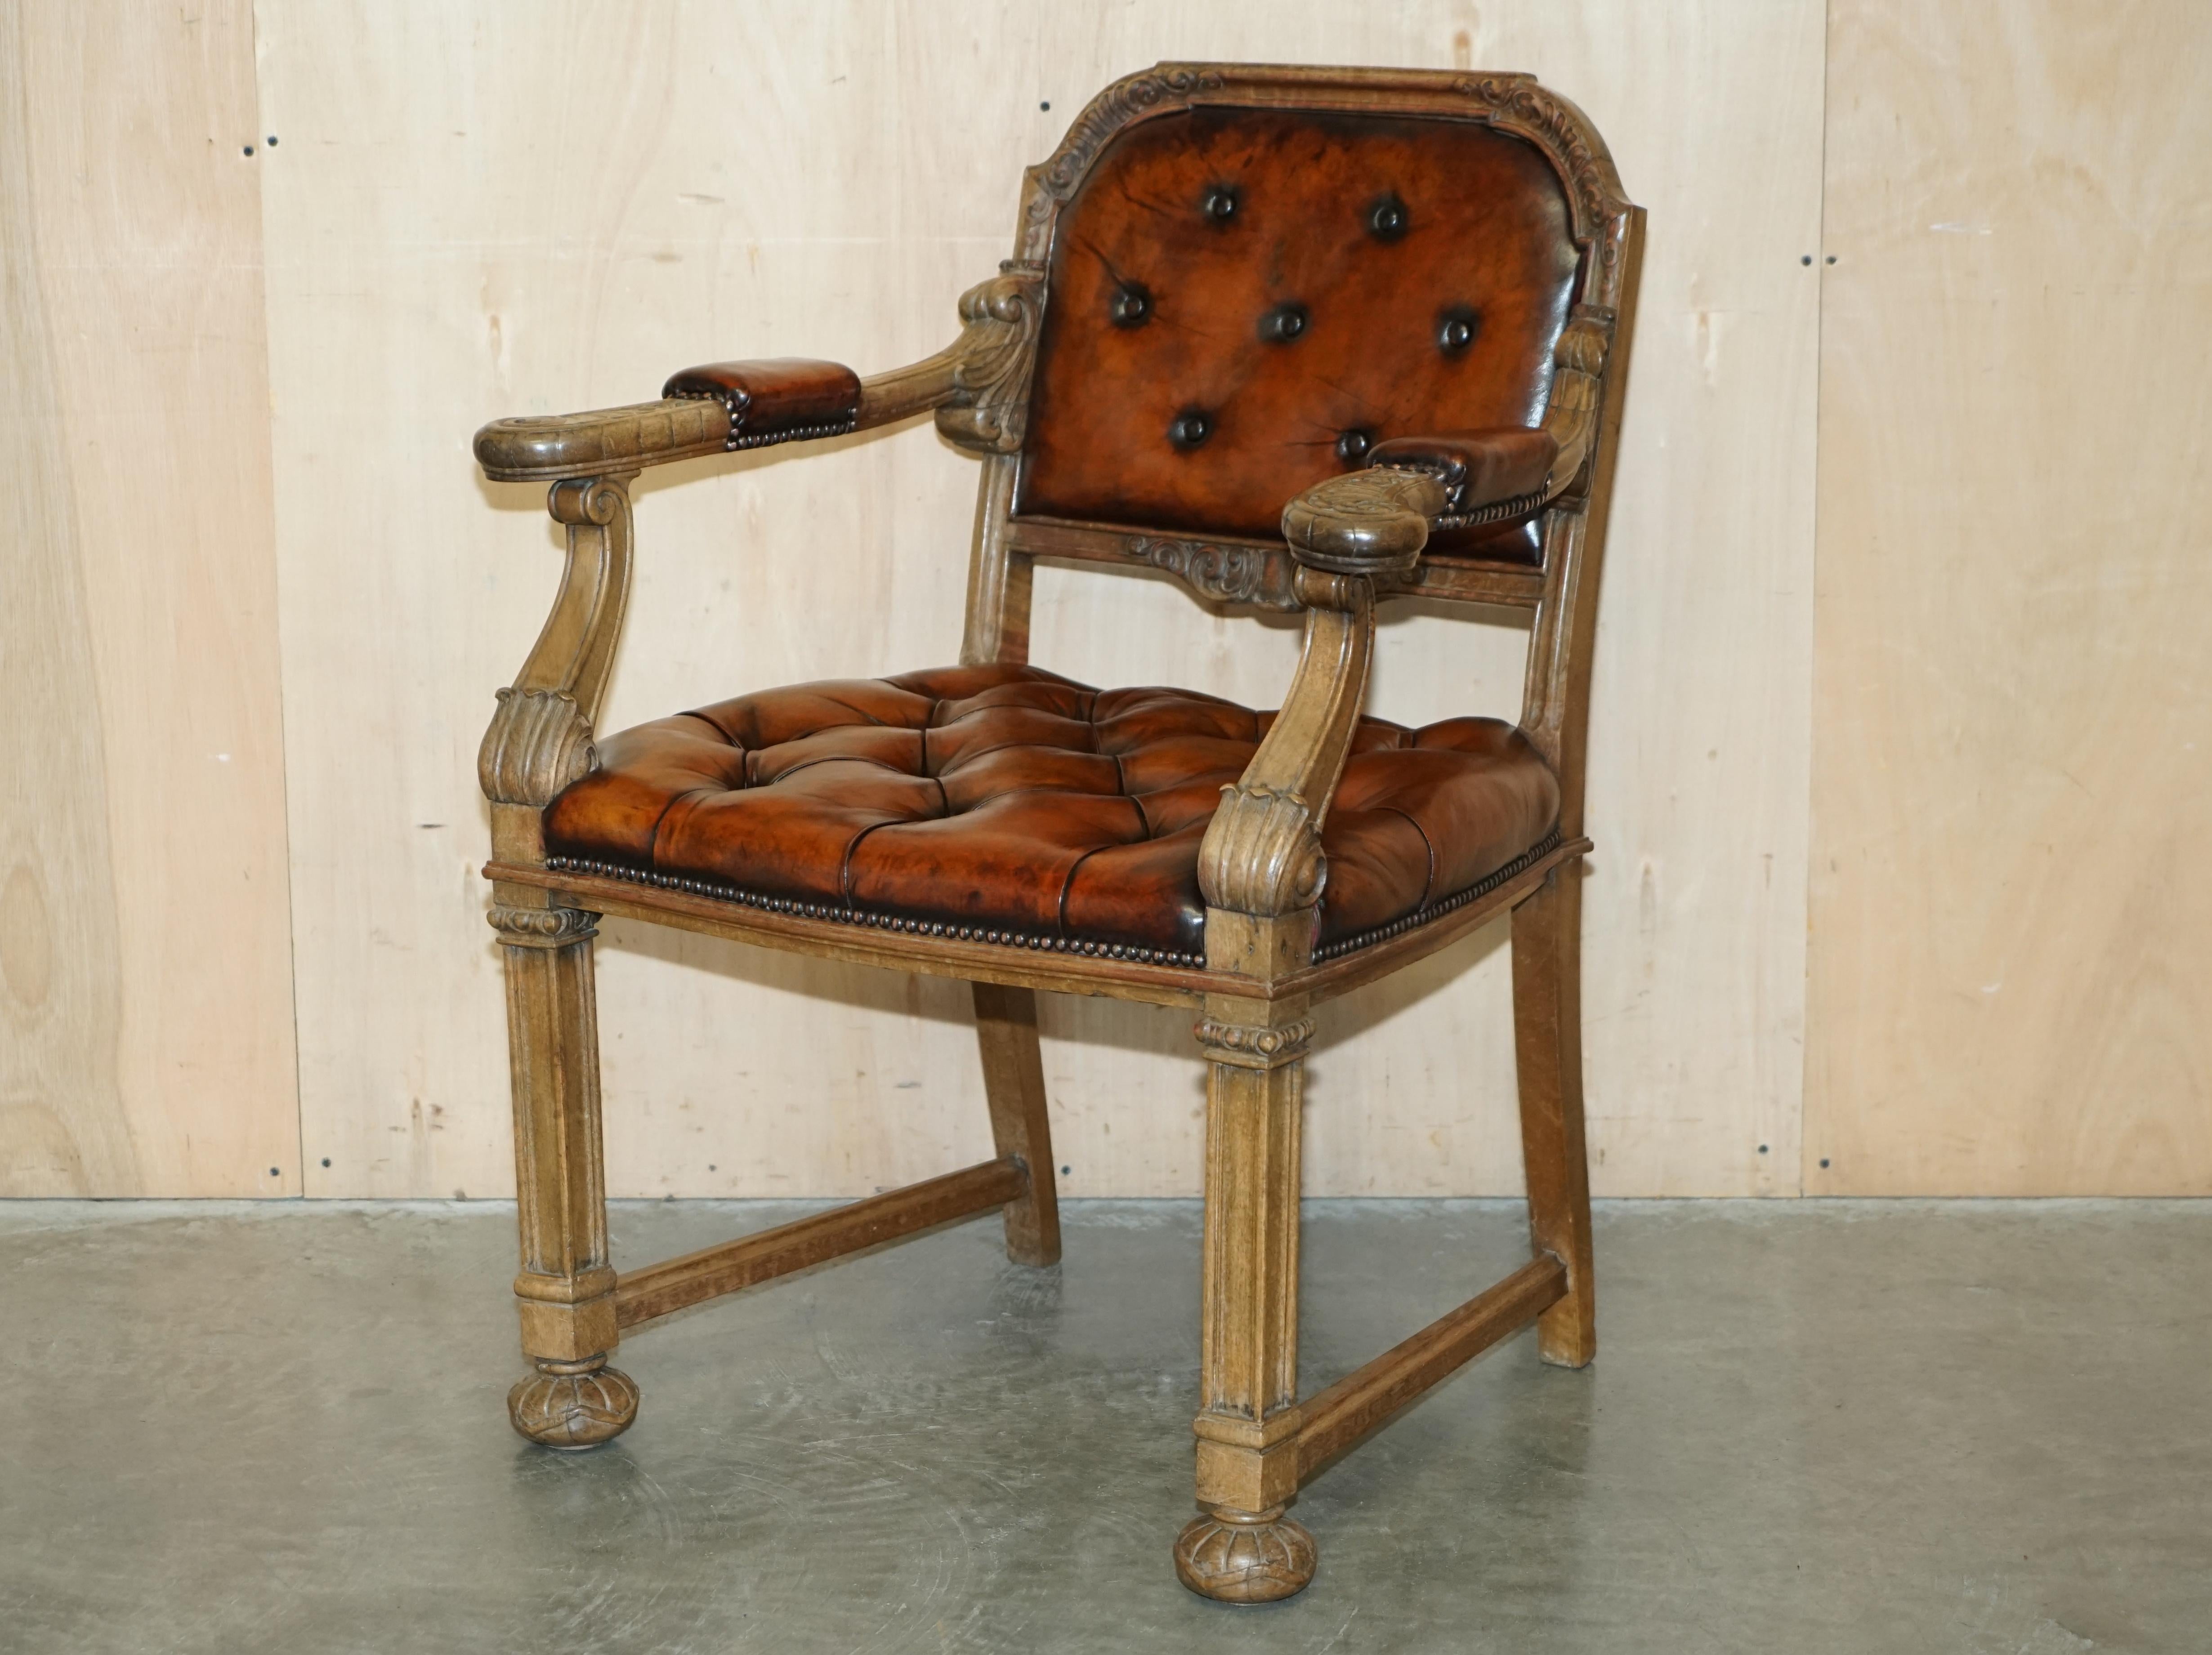 Royal House Antiques

Royal House Antiques a le plaisir d'offrir à la vente cette chaise de bureau Chesterfield en chêne chaulé et cuir, d'environ 1830, absolument exquise et de très bonne facture, dont le cadre est lourdement sculpté.

Veuillez